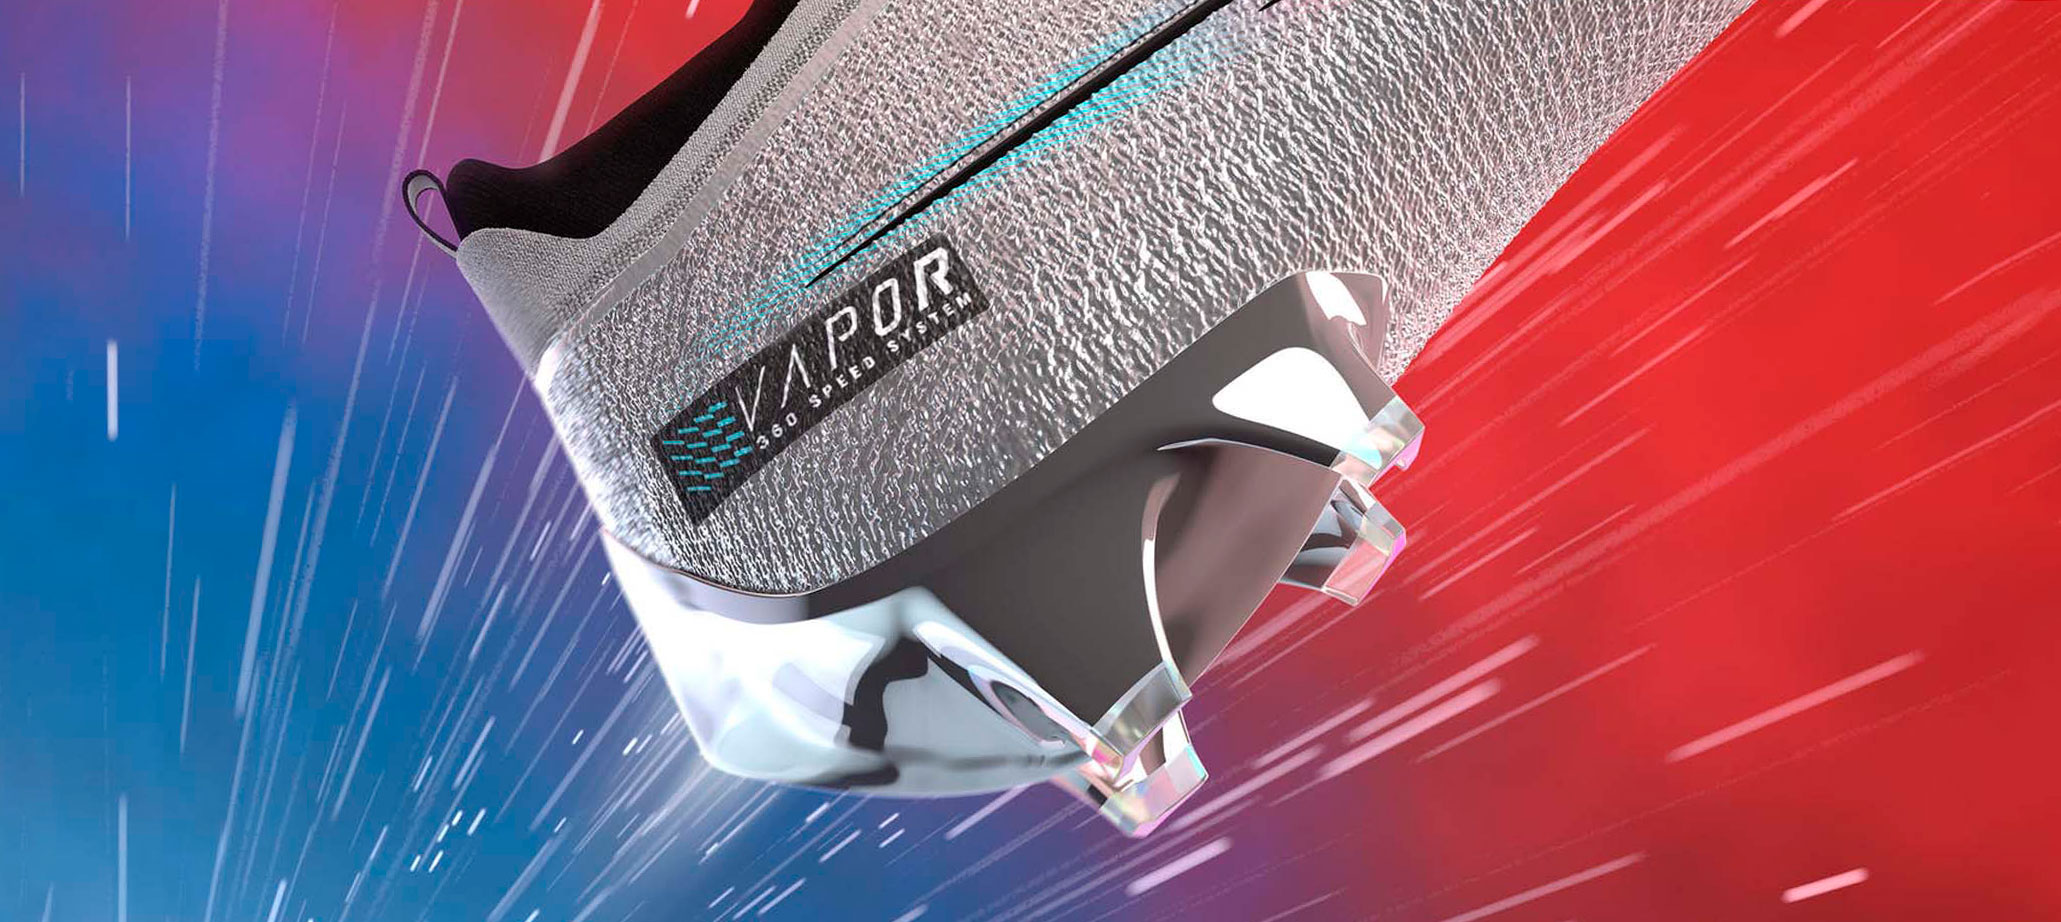 Nike представляют новые бутсы Vapor Edge